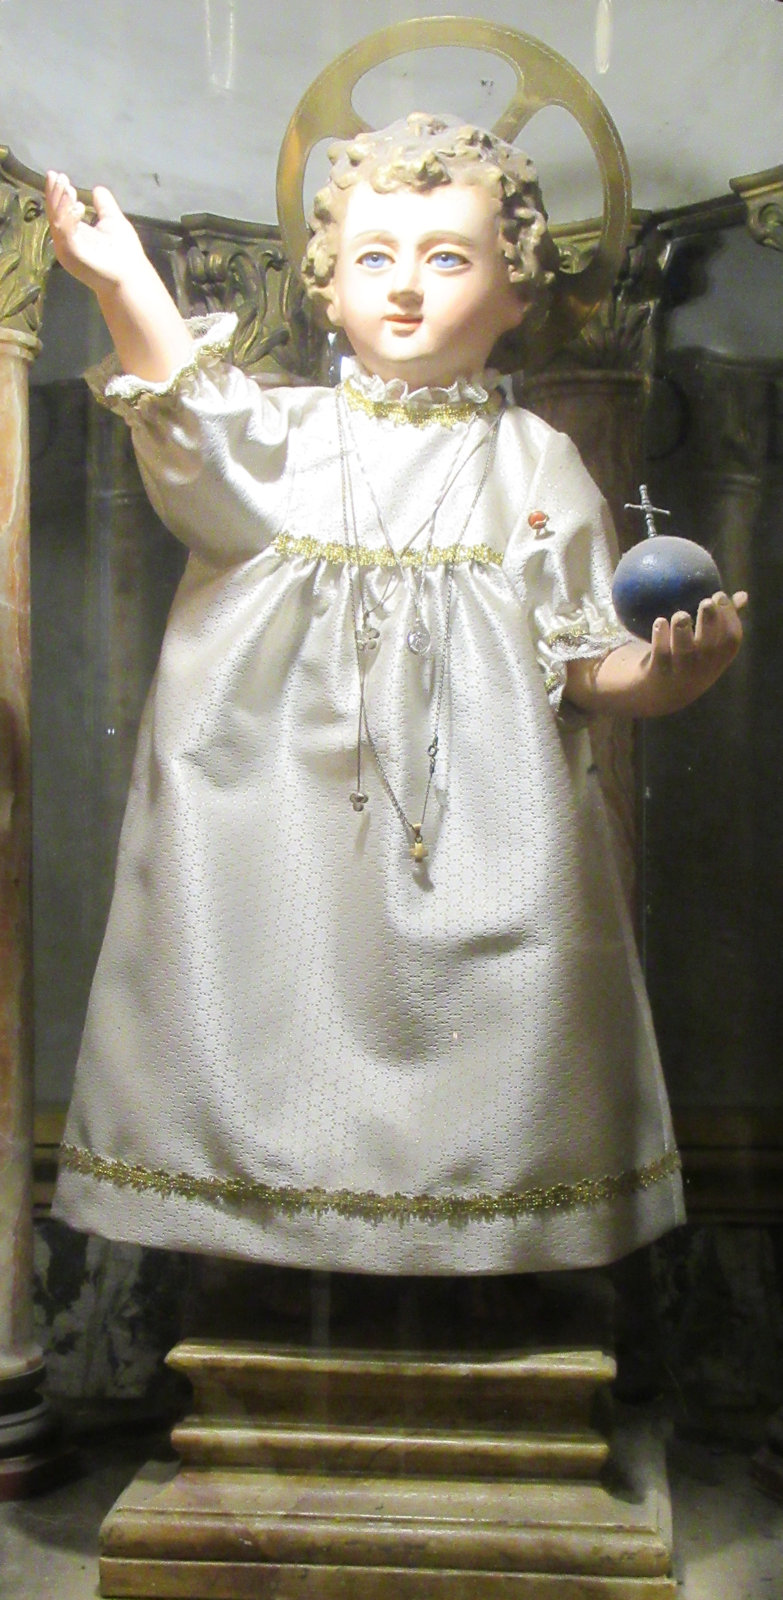 Das Jesuskind, das Kajetan 1517 in der Kirche Santa Maria Maggiore erschien, heute in der Kirche Sant'Andrea della Valle in Rom